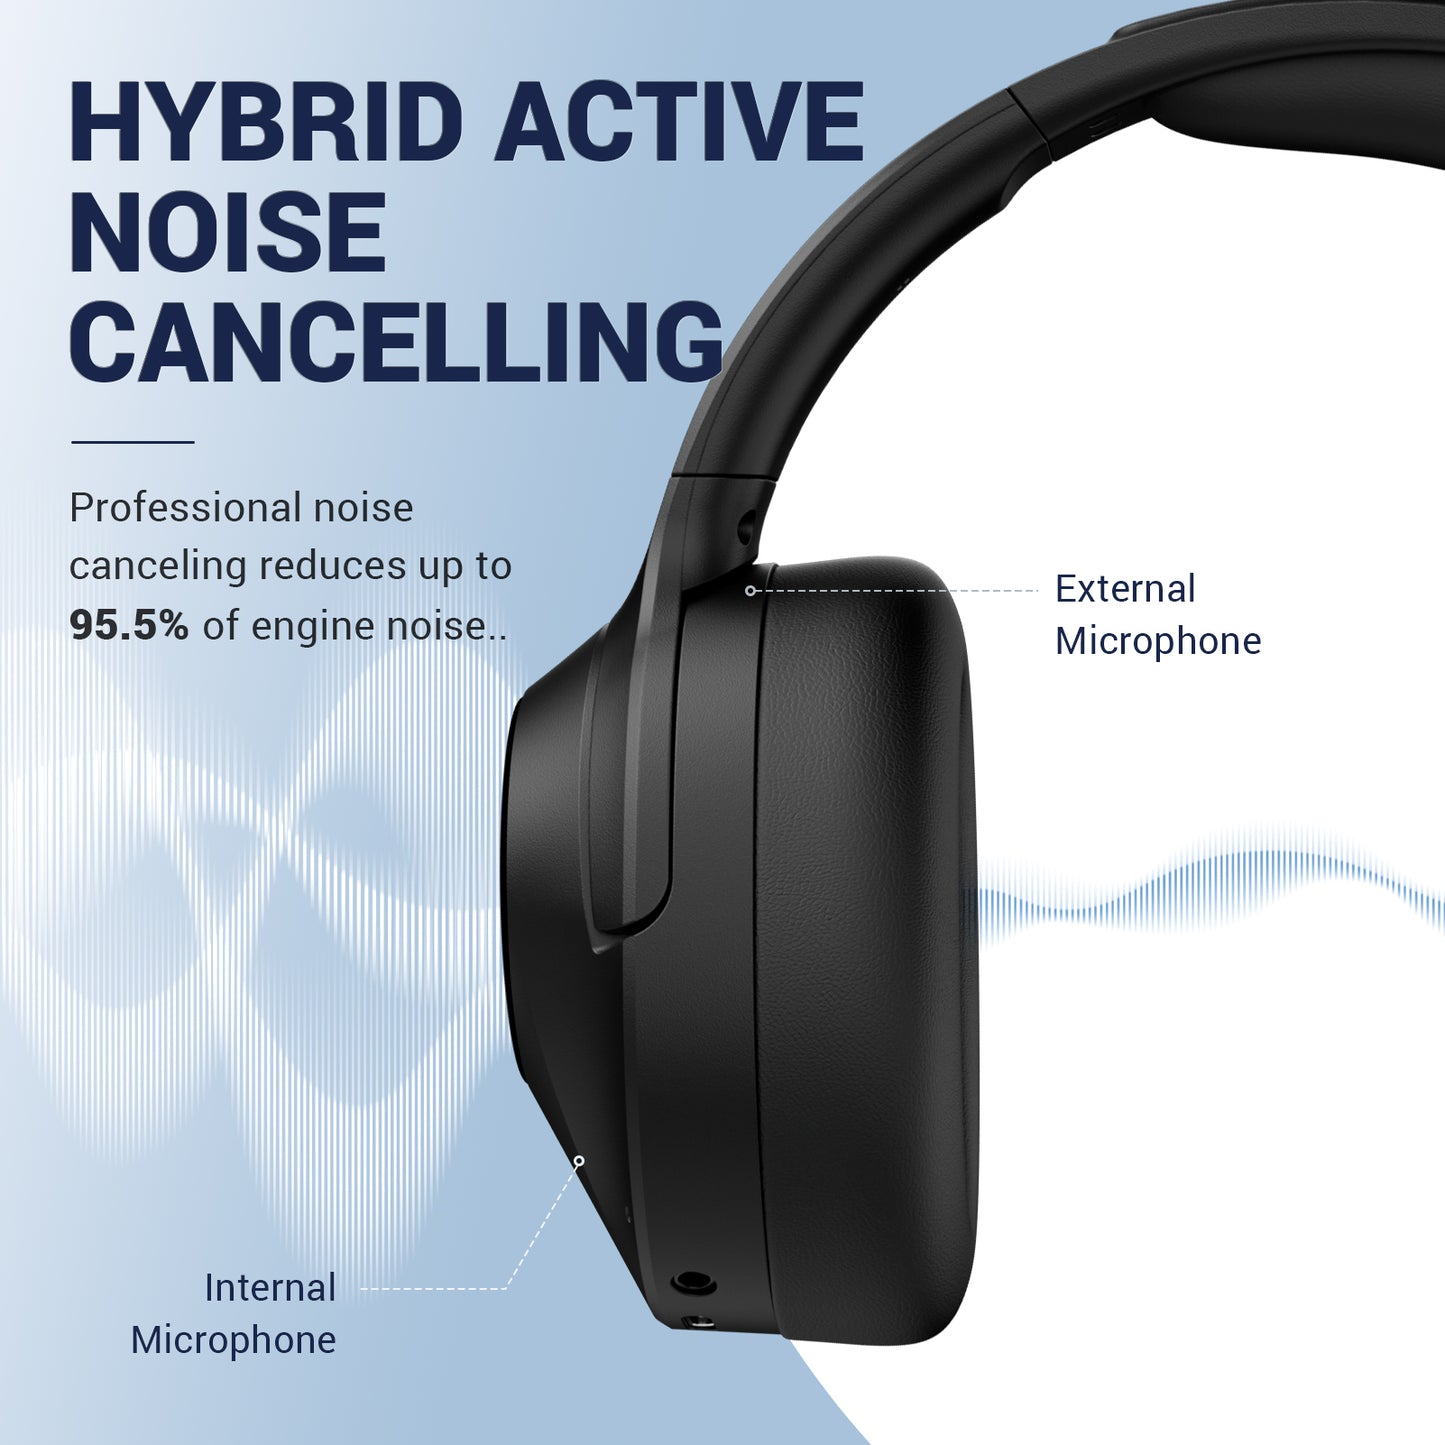 vibeadio Hybrid Active Noise Cancelling Headphones